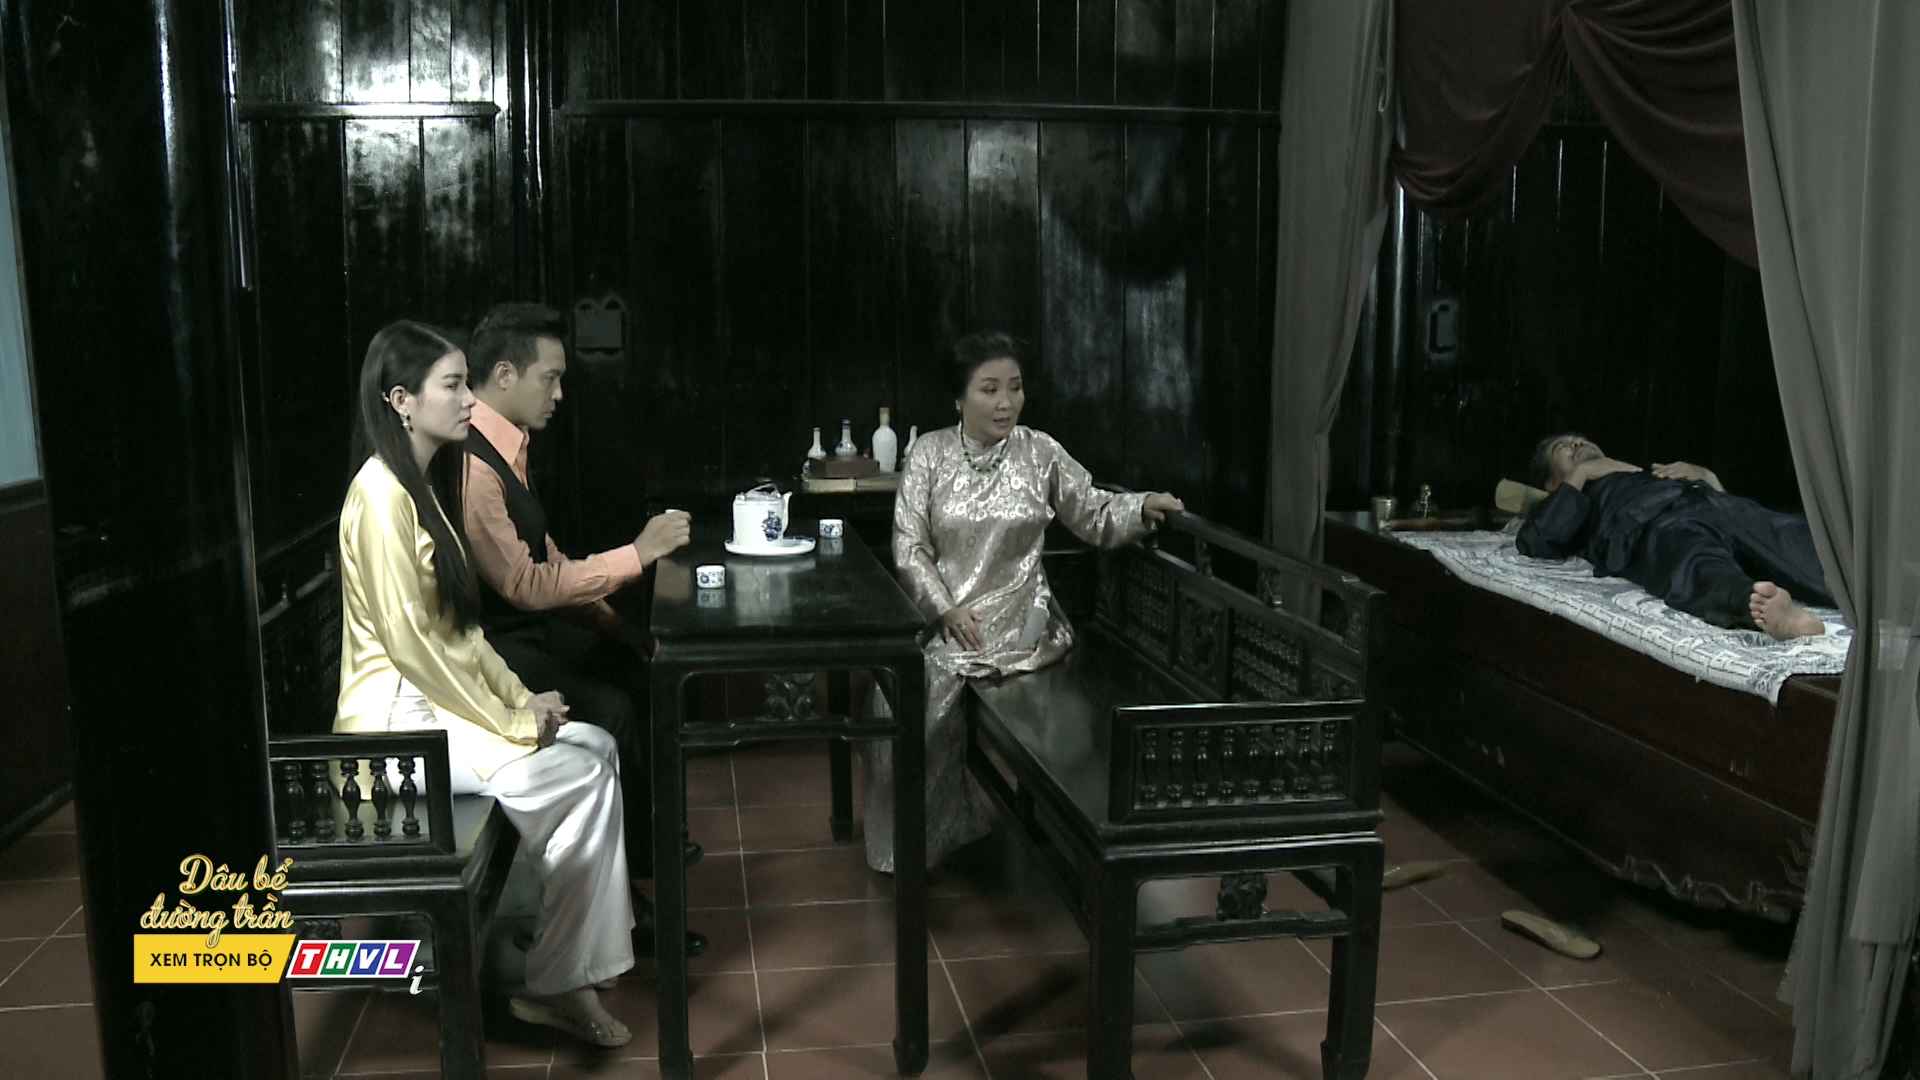 Chính Hồng Xuân và Kim Cẩm là người đã hại bà Ánh Xuân trong phim “Dâu bể đường trần” tập 36. Ảnh: NSX.